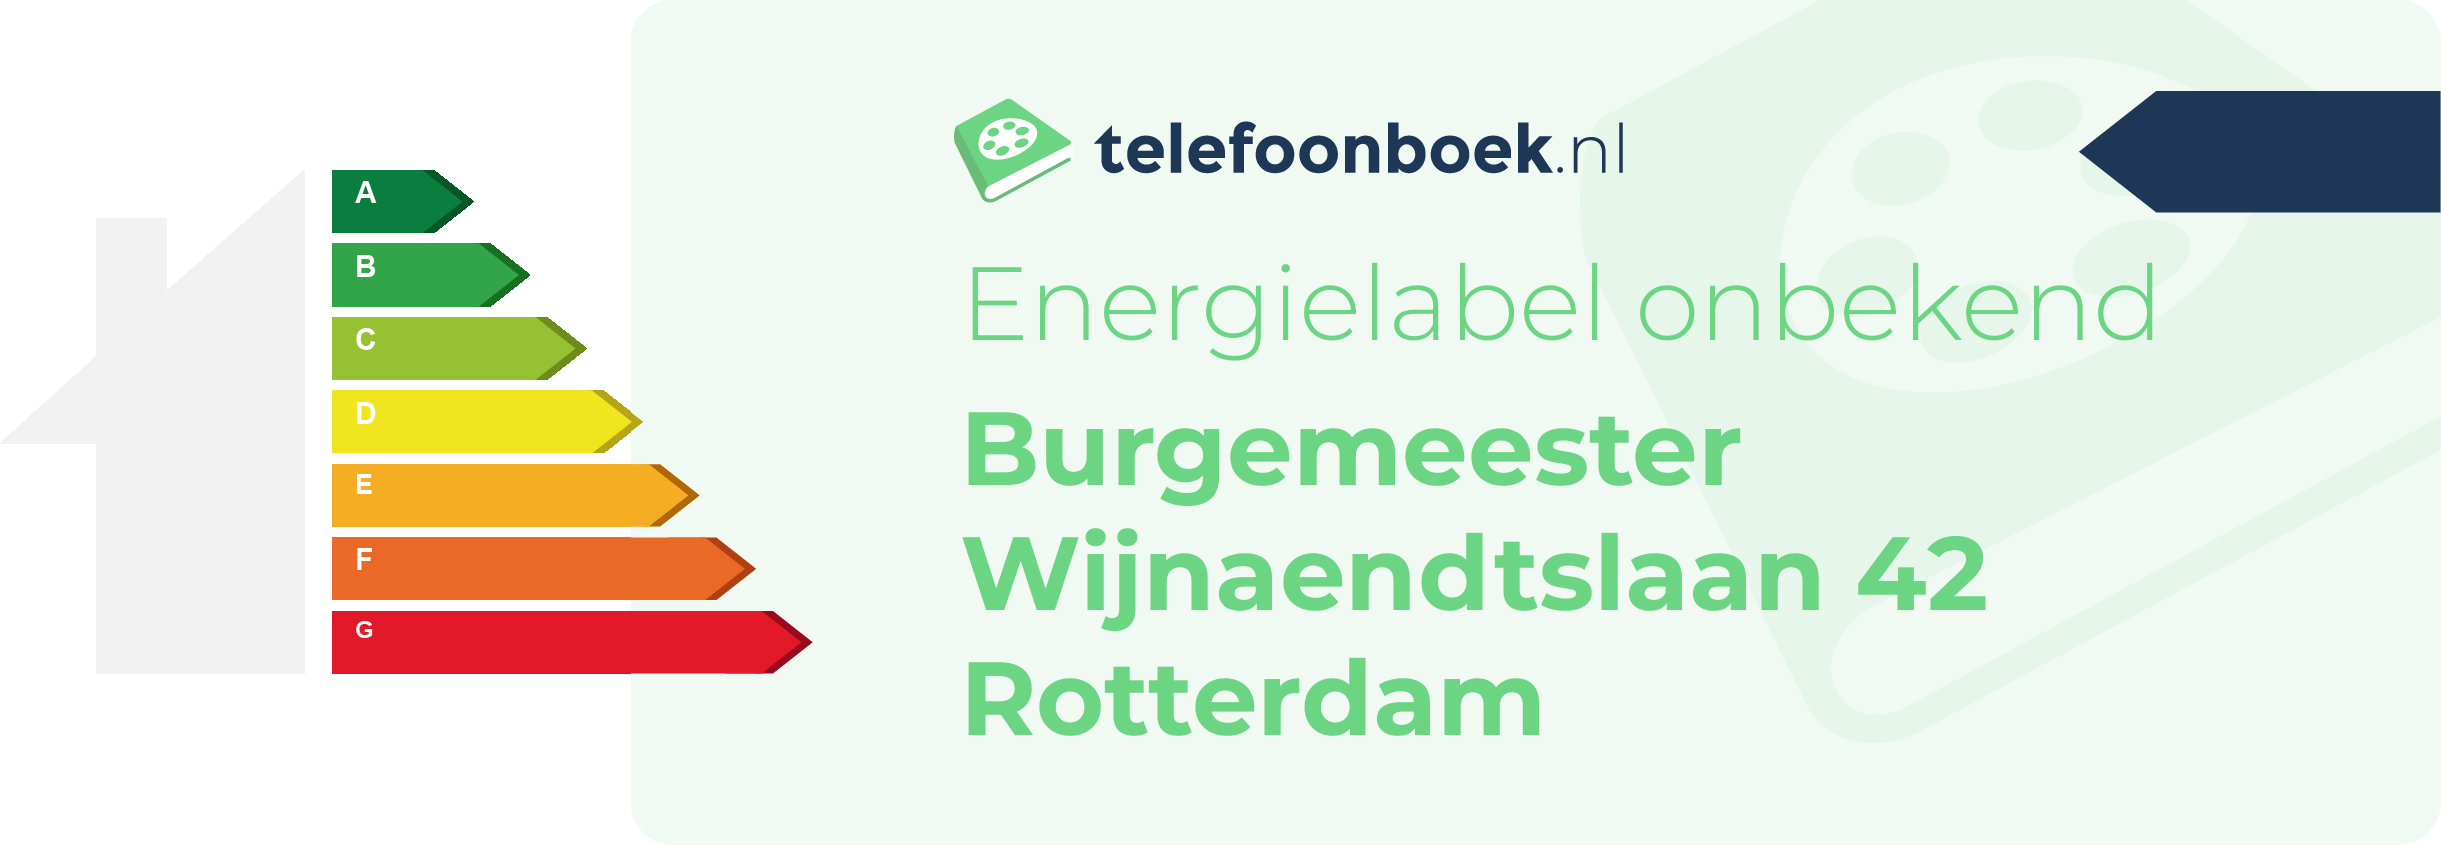 Energielabel Burgemeester Wijnaendtslaan 42 Rotterdam